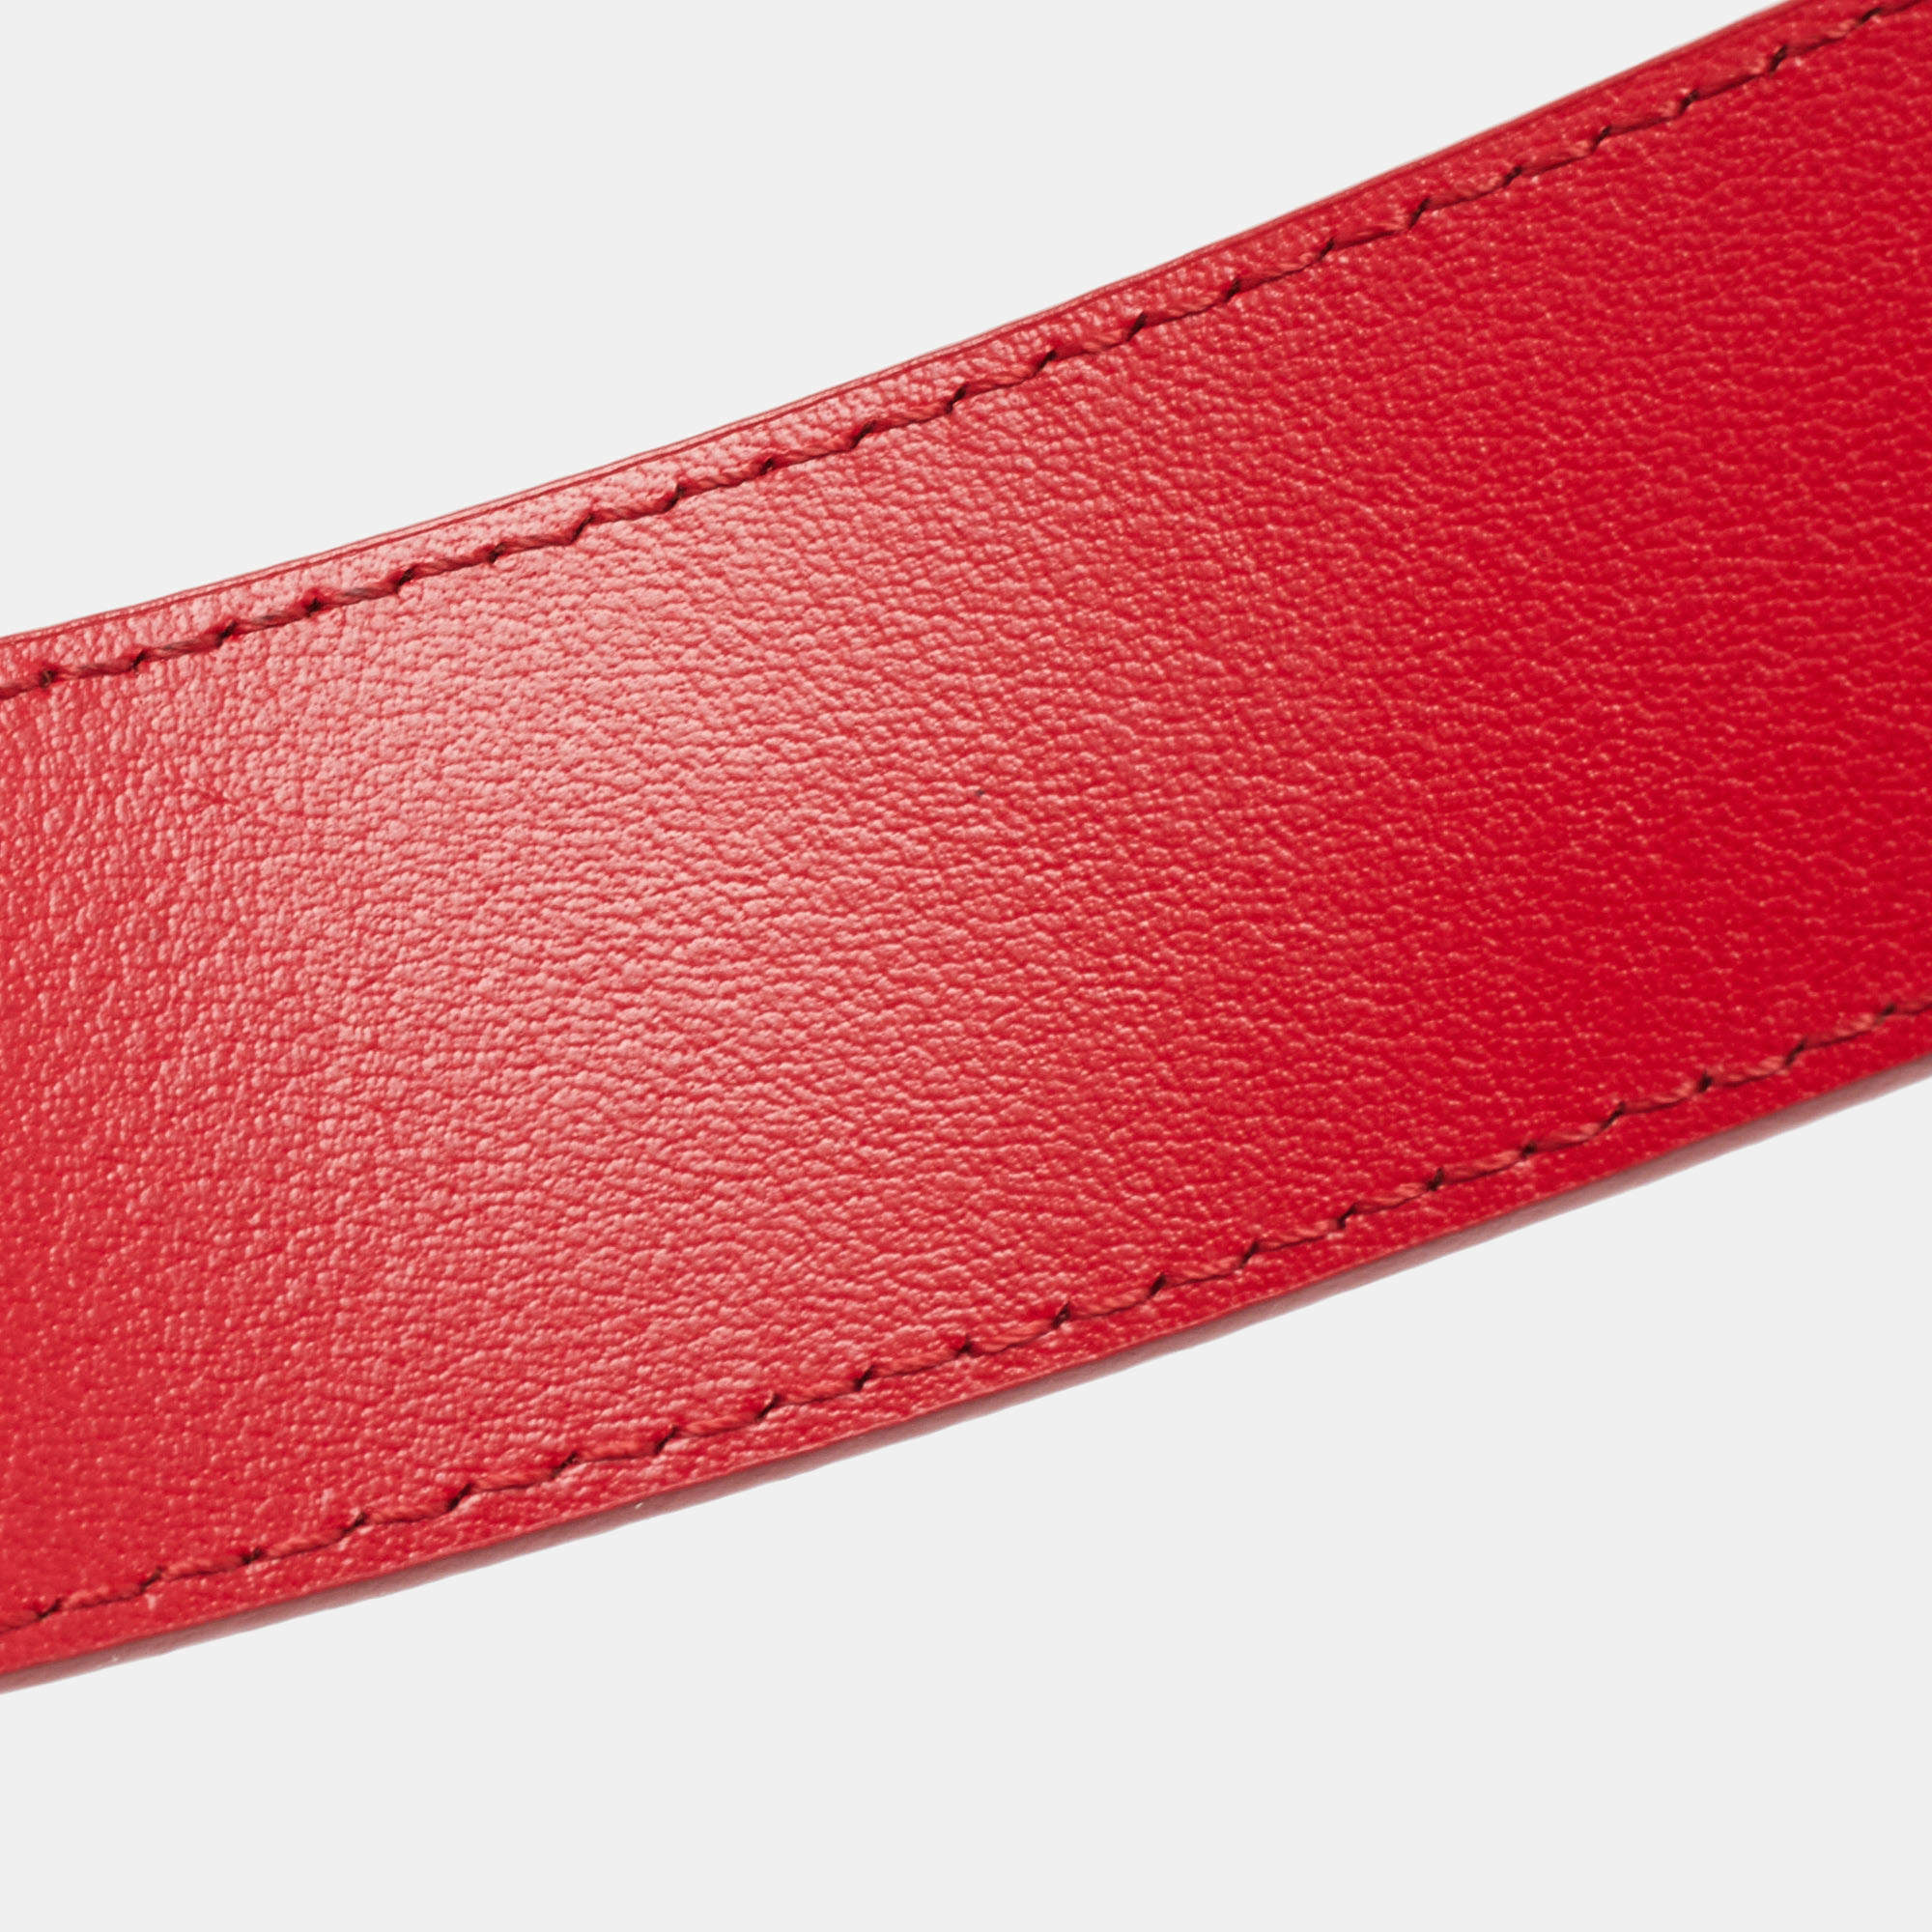 Louis Vuitton Red Leather LV New Wave Belt 85CM Louis Vuitton